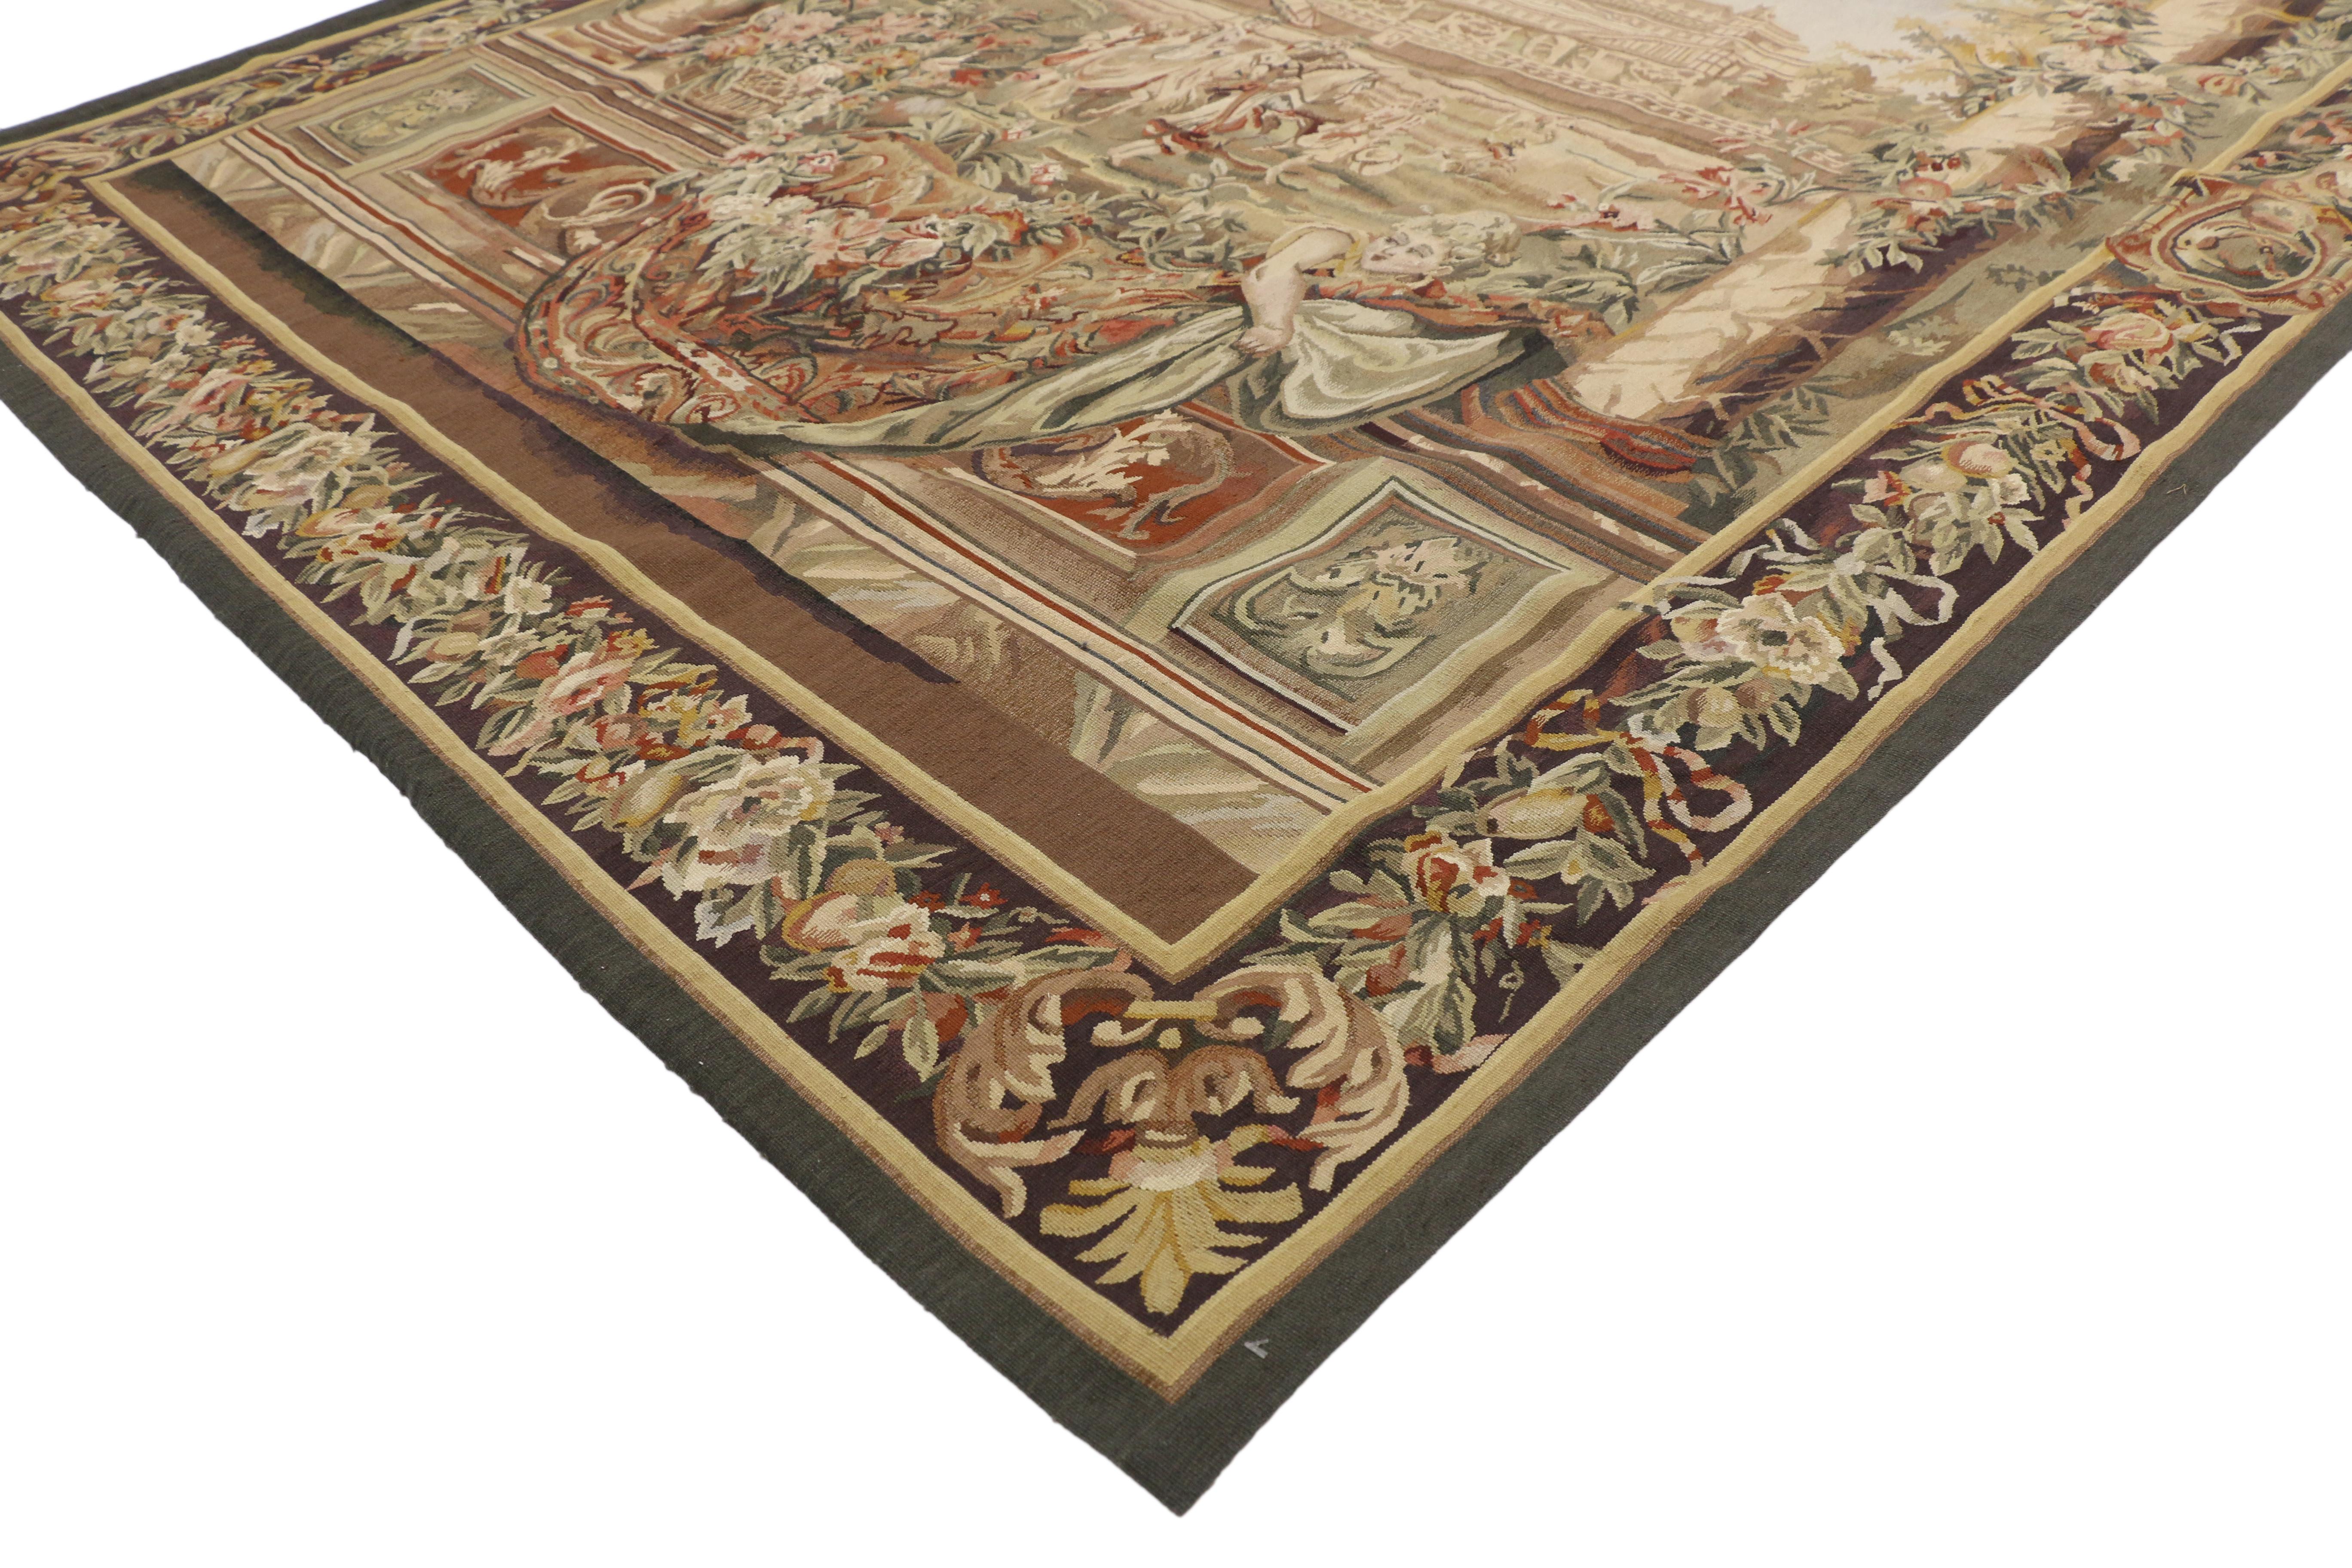 73692 Charles le Brun Gobelins Inspired Château Neuf Saint-Germain Tapestry with Louis XIV Style, Wall Tanging 06'00 x 07'03. Cette tapisserie de style Louis XIV en laine tissée à la main représente le Château Neuf Saint-Germain, de la série de